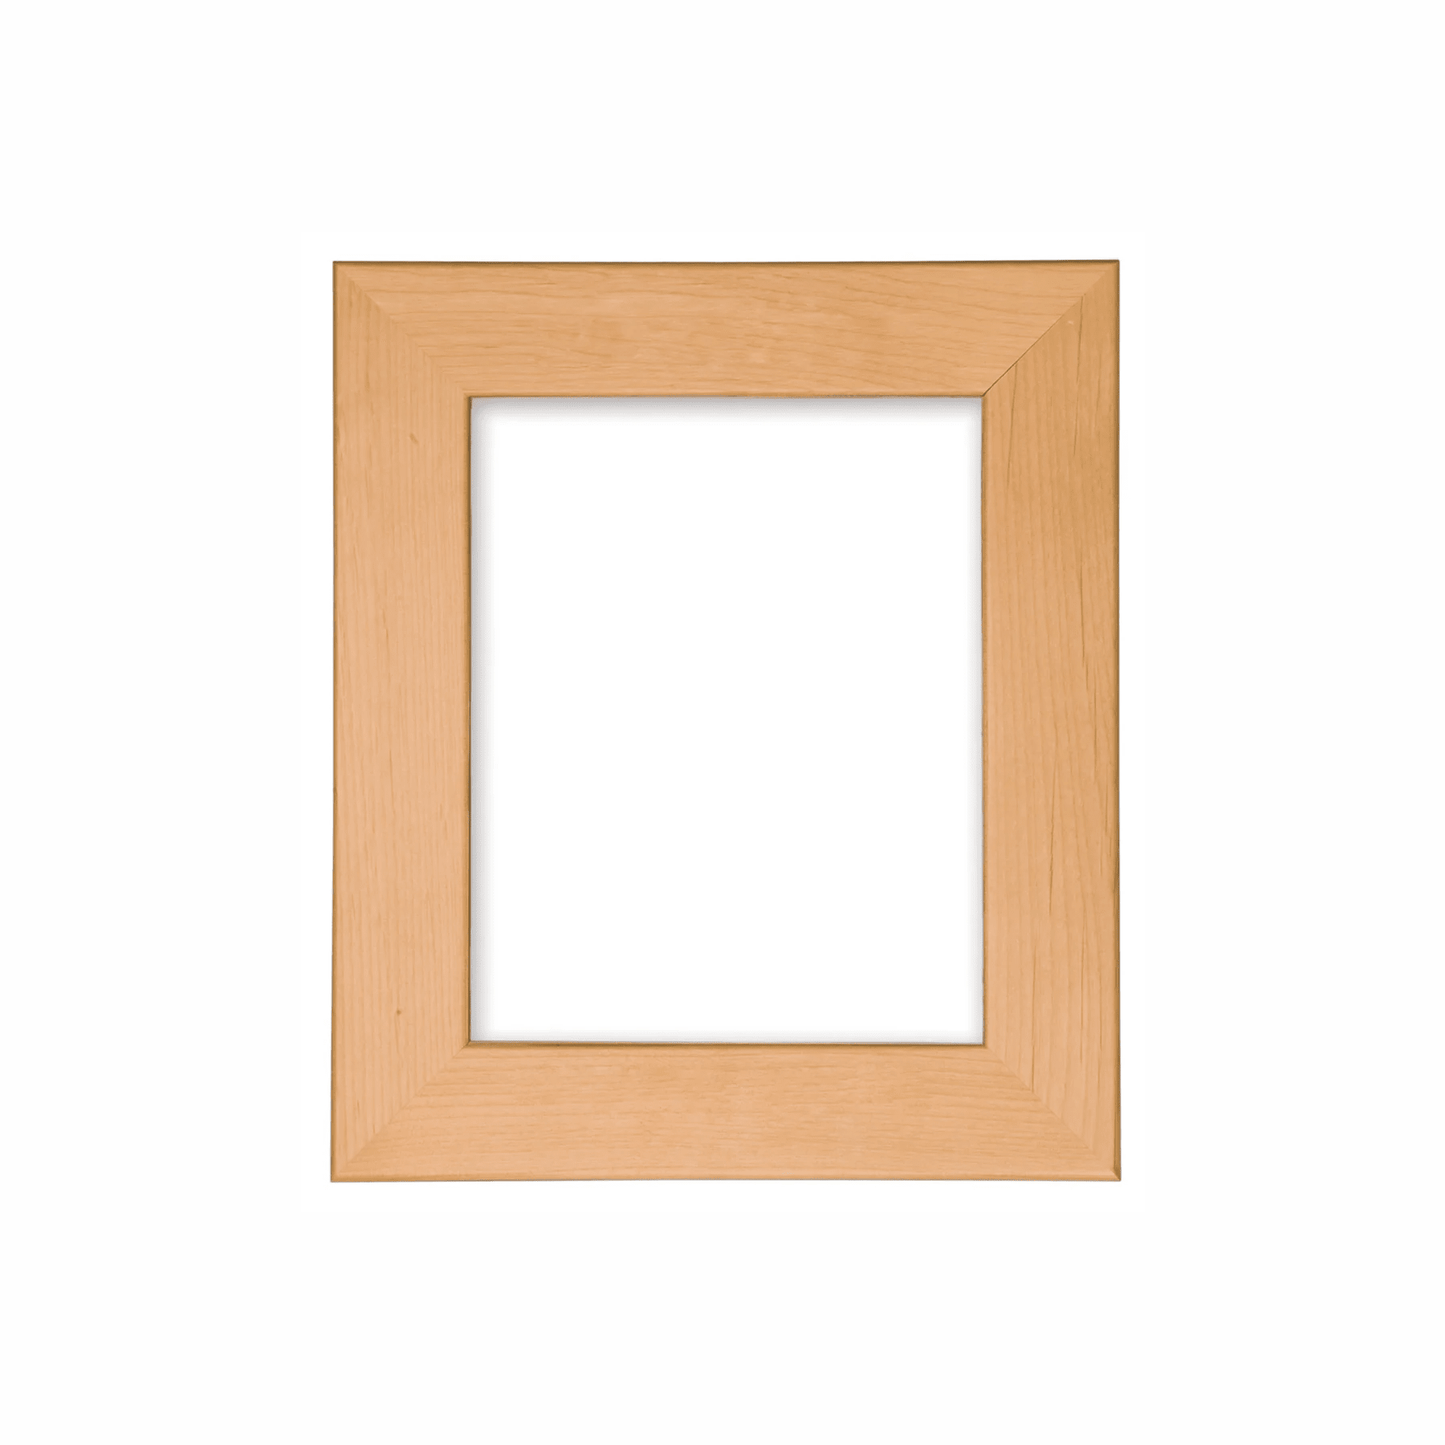 Red Alder Wood Picture Frames